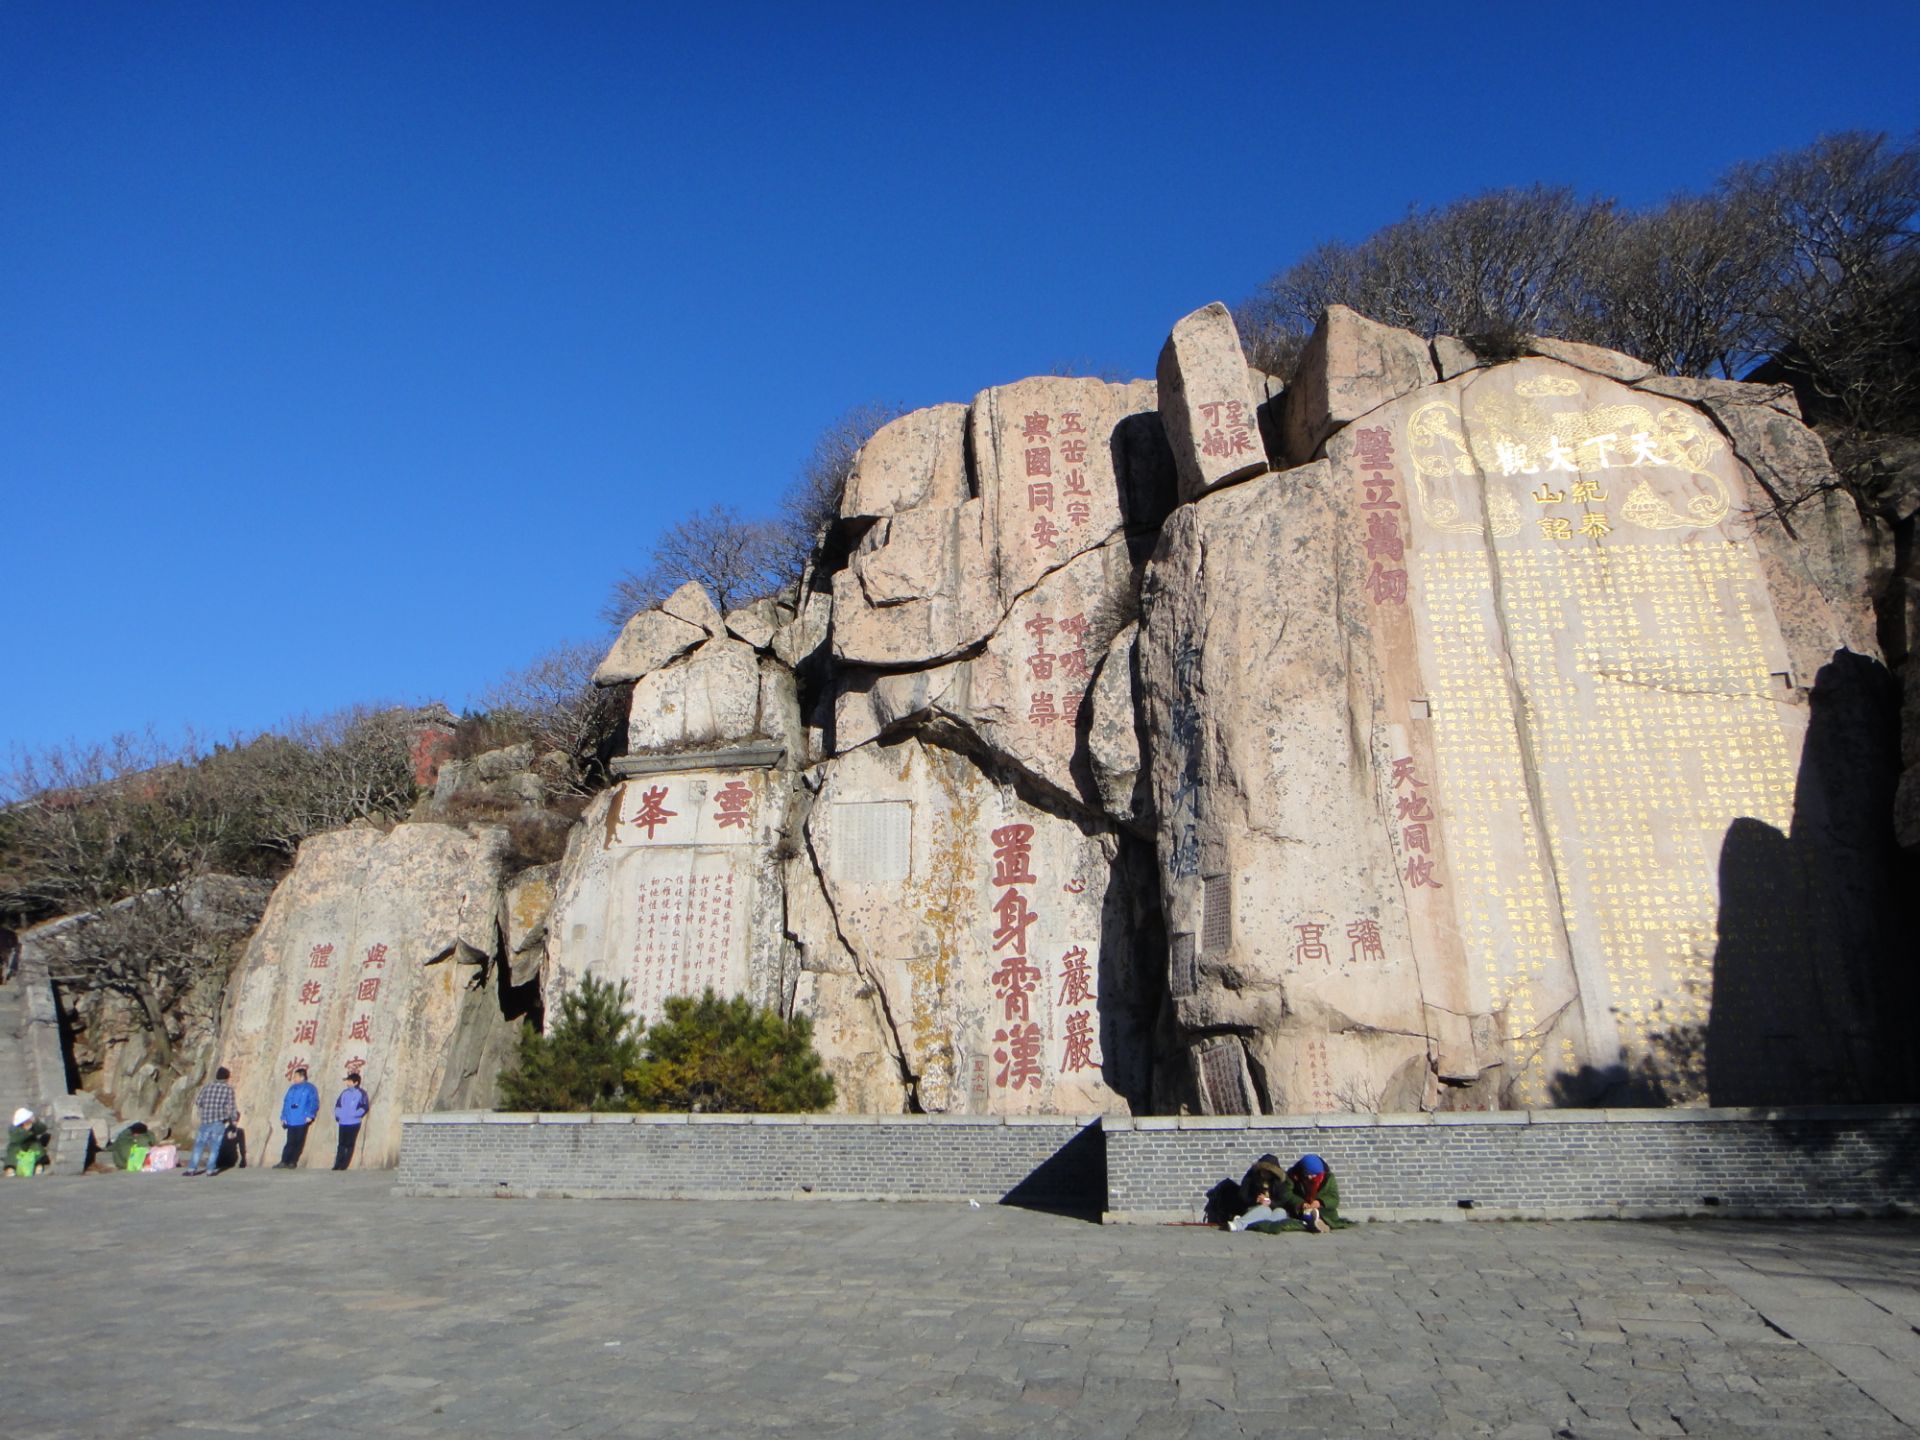 优享资讯 | 重庆高温 嘉陵江见底 600年前摩崖造像露出江面